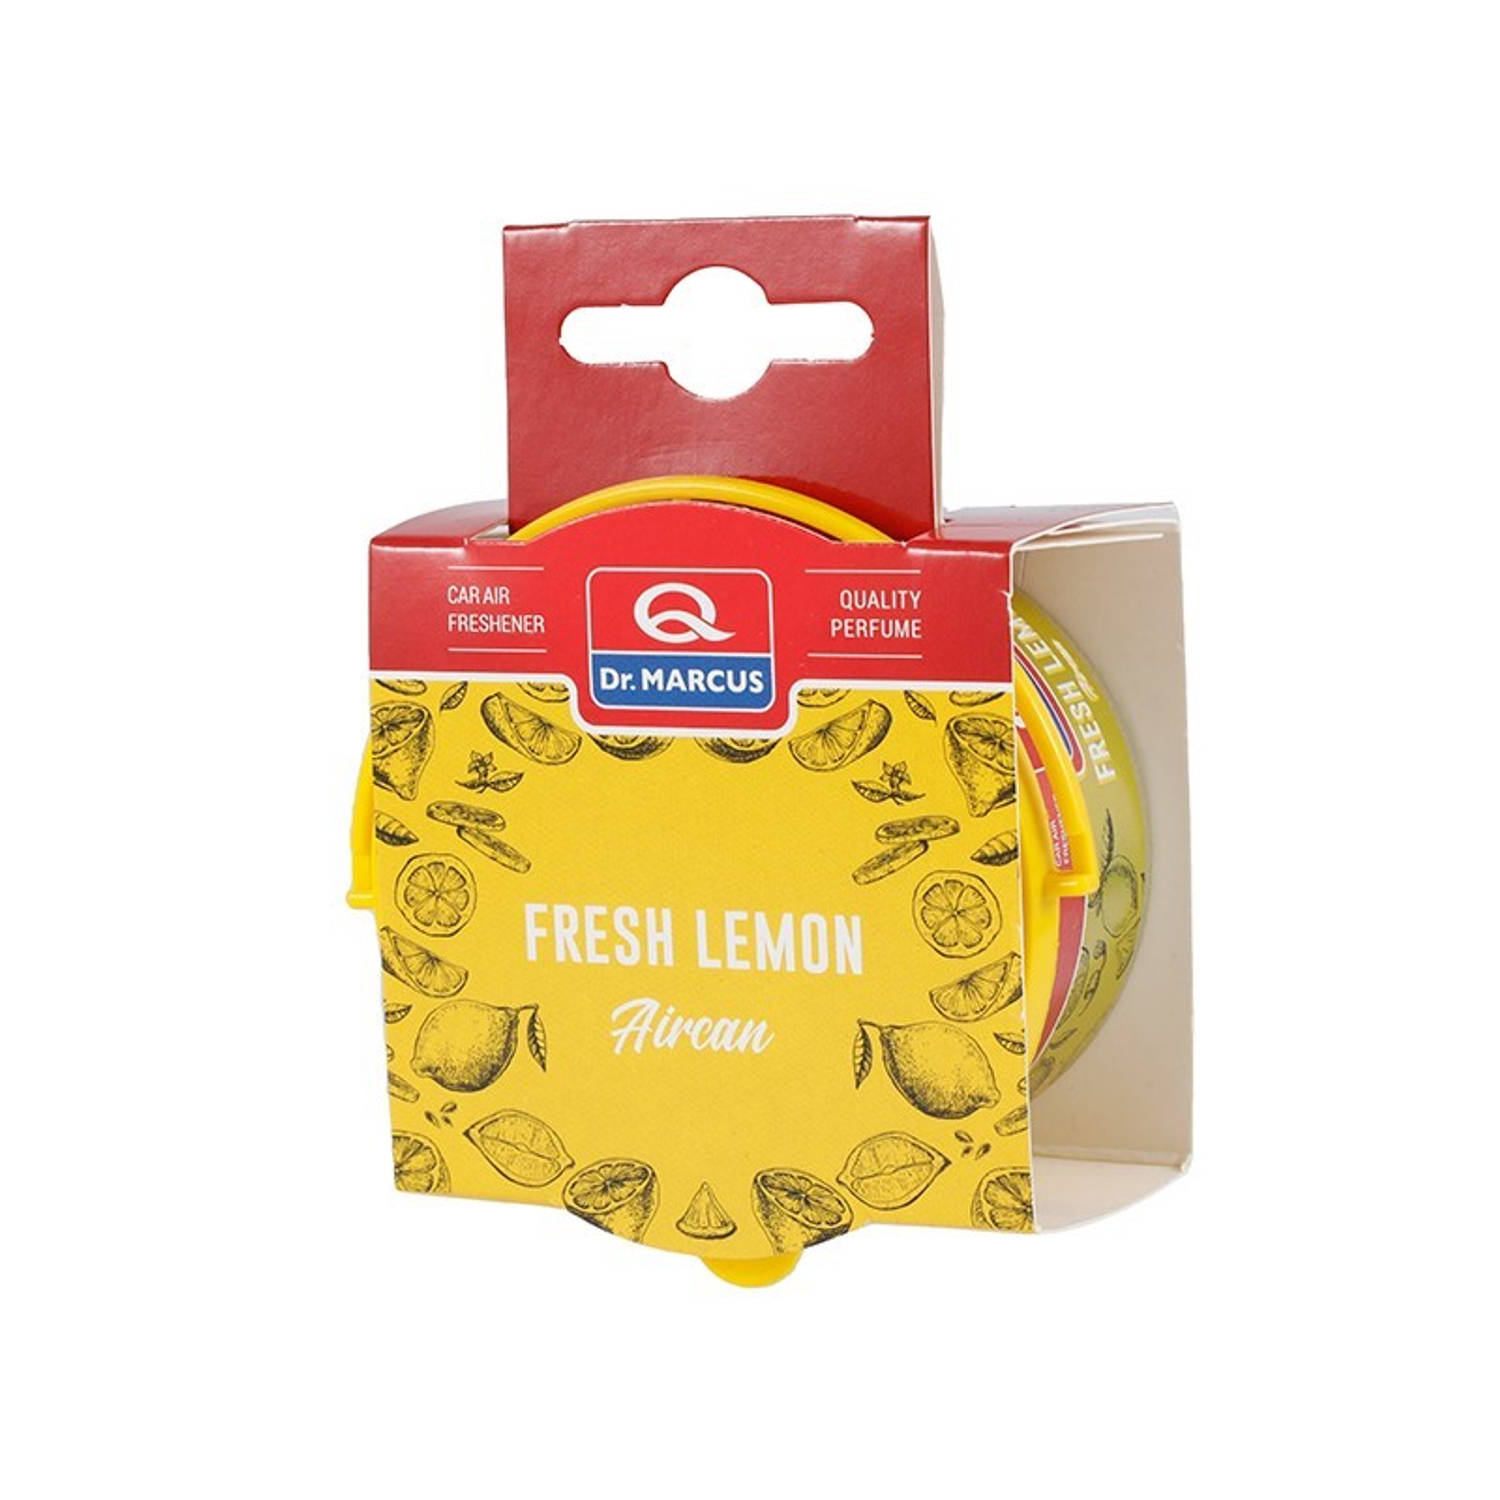 Dr. Marcus Aircan Fresh Lemon luchtverfrisser met neutrafresh technologie - Autogeurtje voor in de auto, thuis of kantoor - Tot 60 dagen geurverspreiding 40 gram